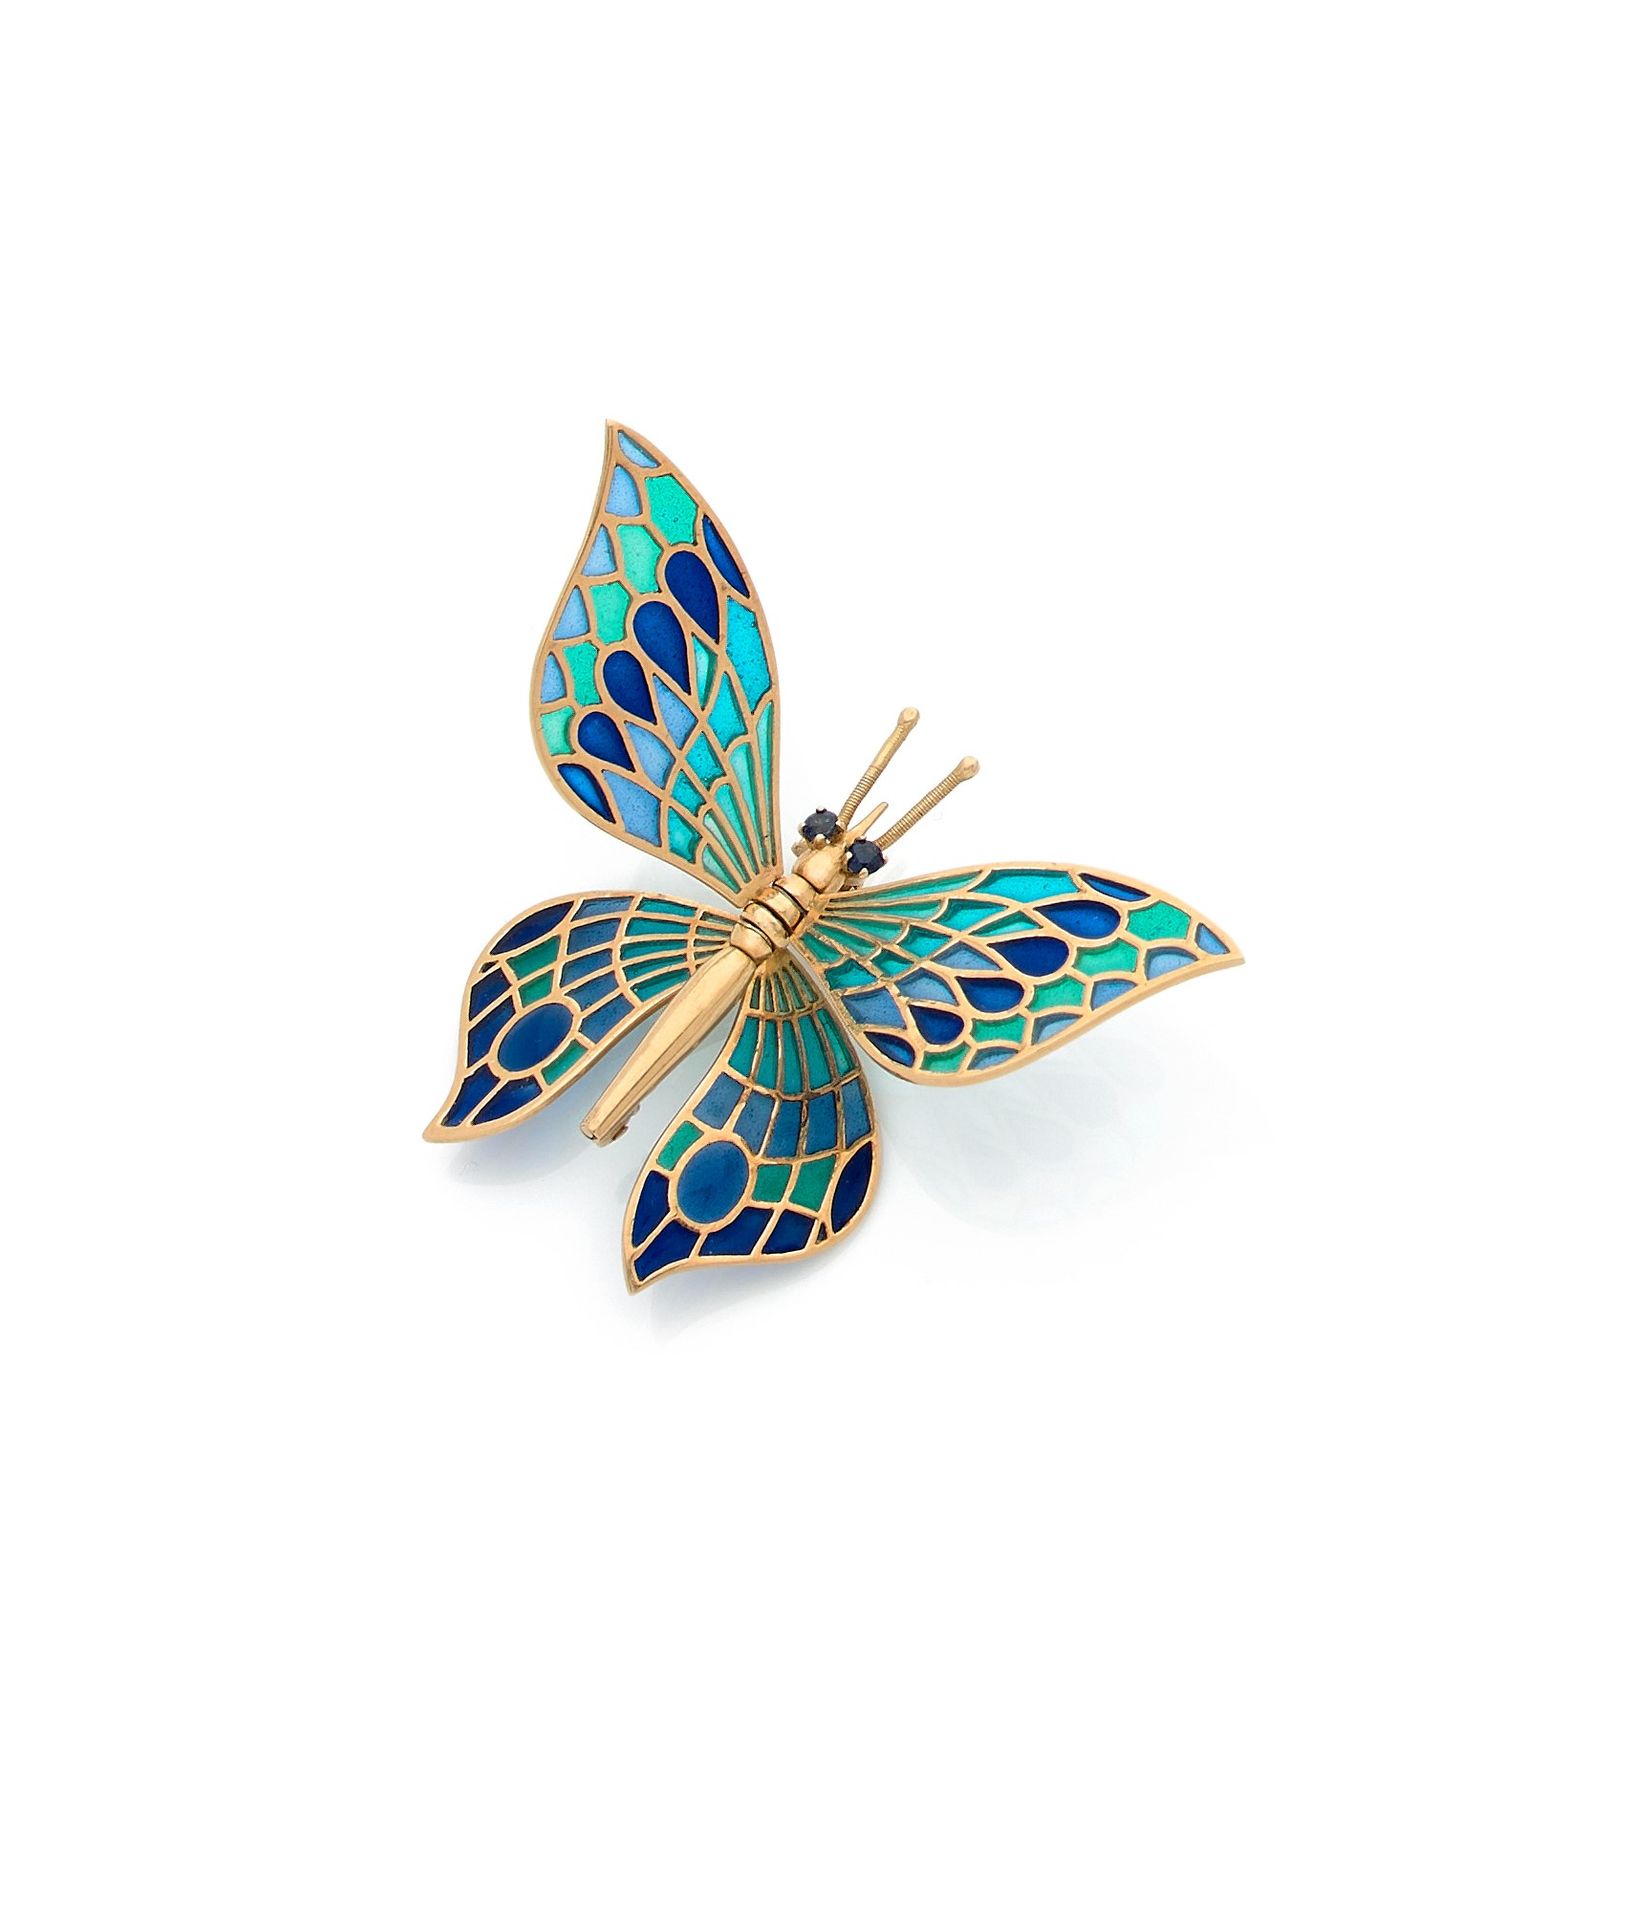 Broche de mariposa en oro de 18 quilates (750), las alas, articuladas,  esmaltadas en plique-à-jour, los ojos resaltados cada uno con un zafiro.  Dimensiones: 4 x 6,2 cm aproximadamente. Peso bruto: 9,6